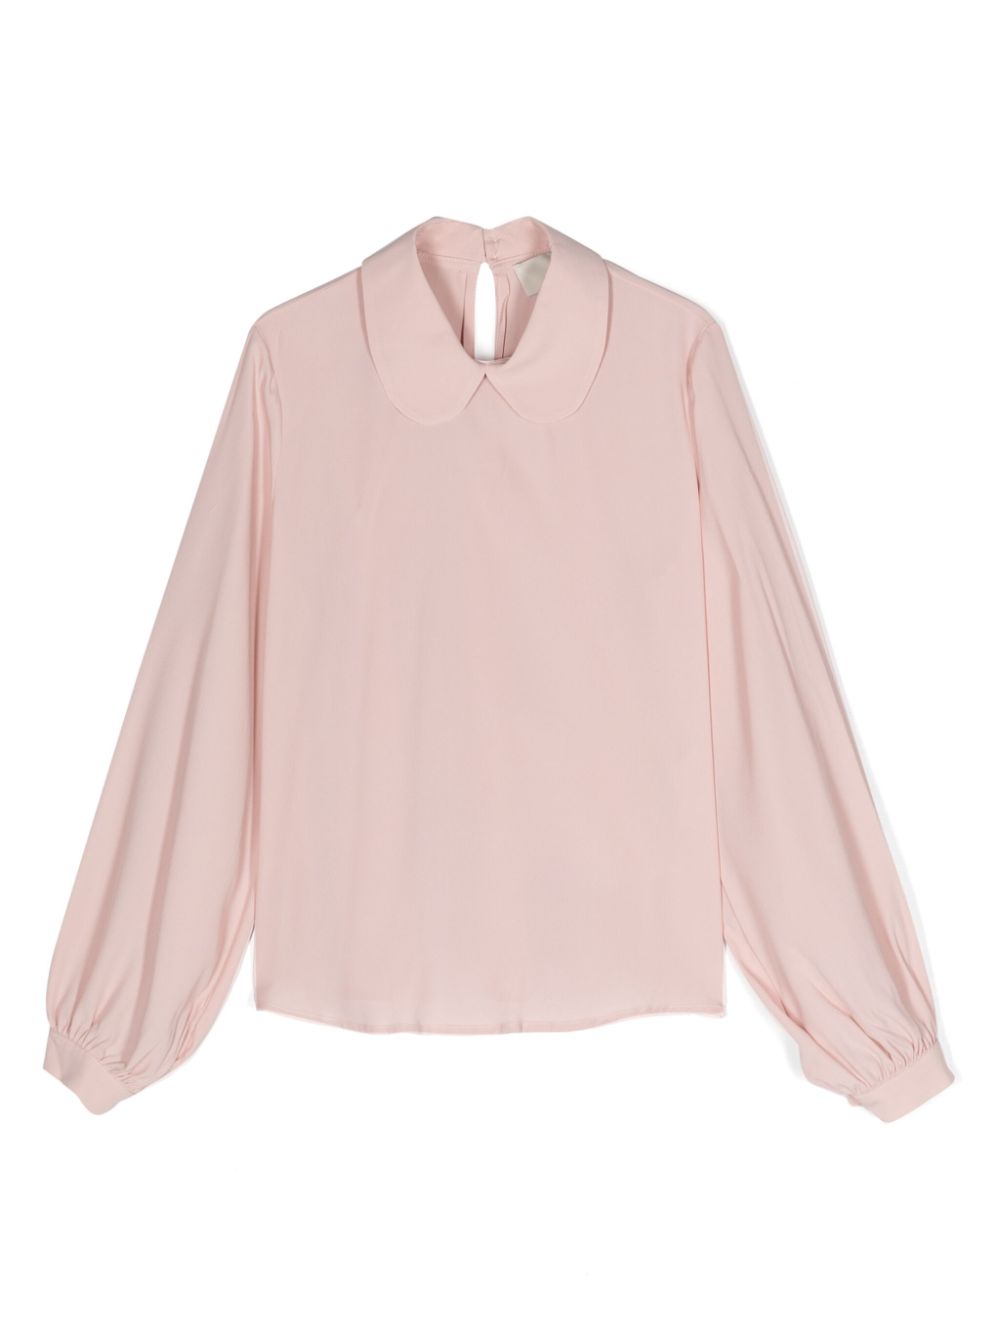 Light pink shirt for girls